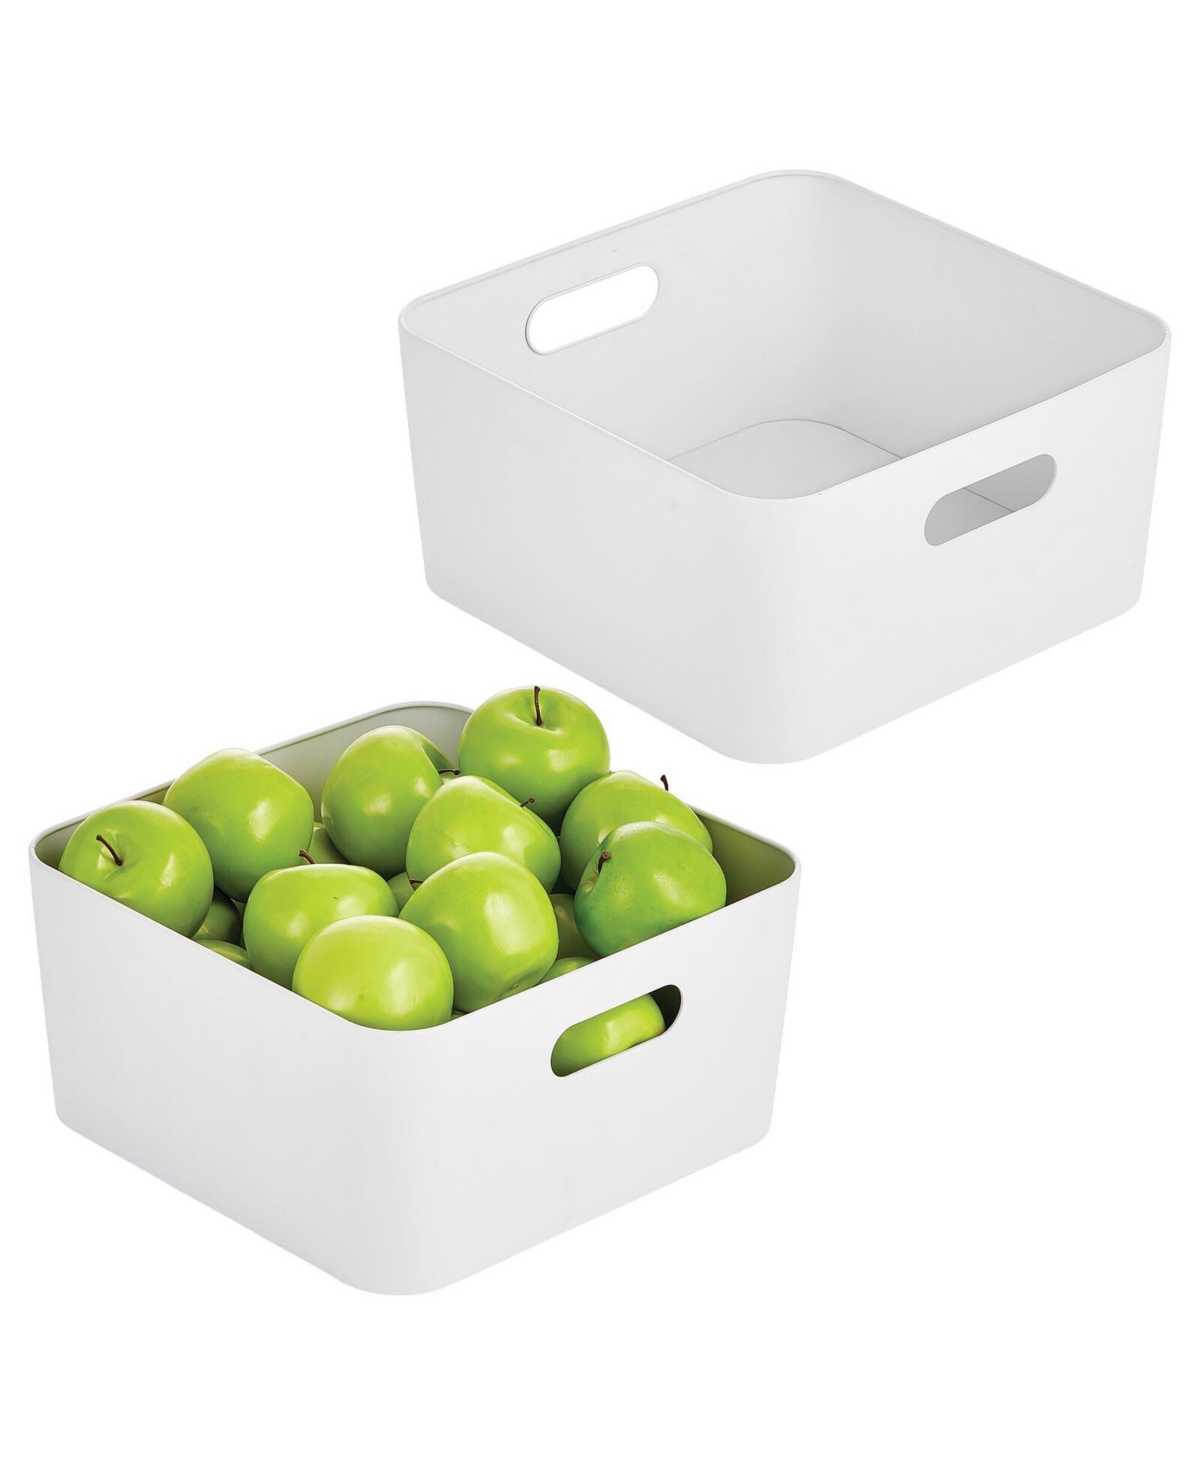 mDesign Medium Metal Kitchen Storage Container Bin with Handles, 2 Pack, White